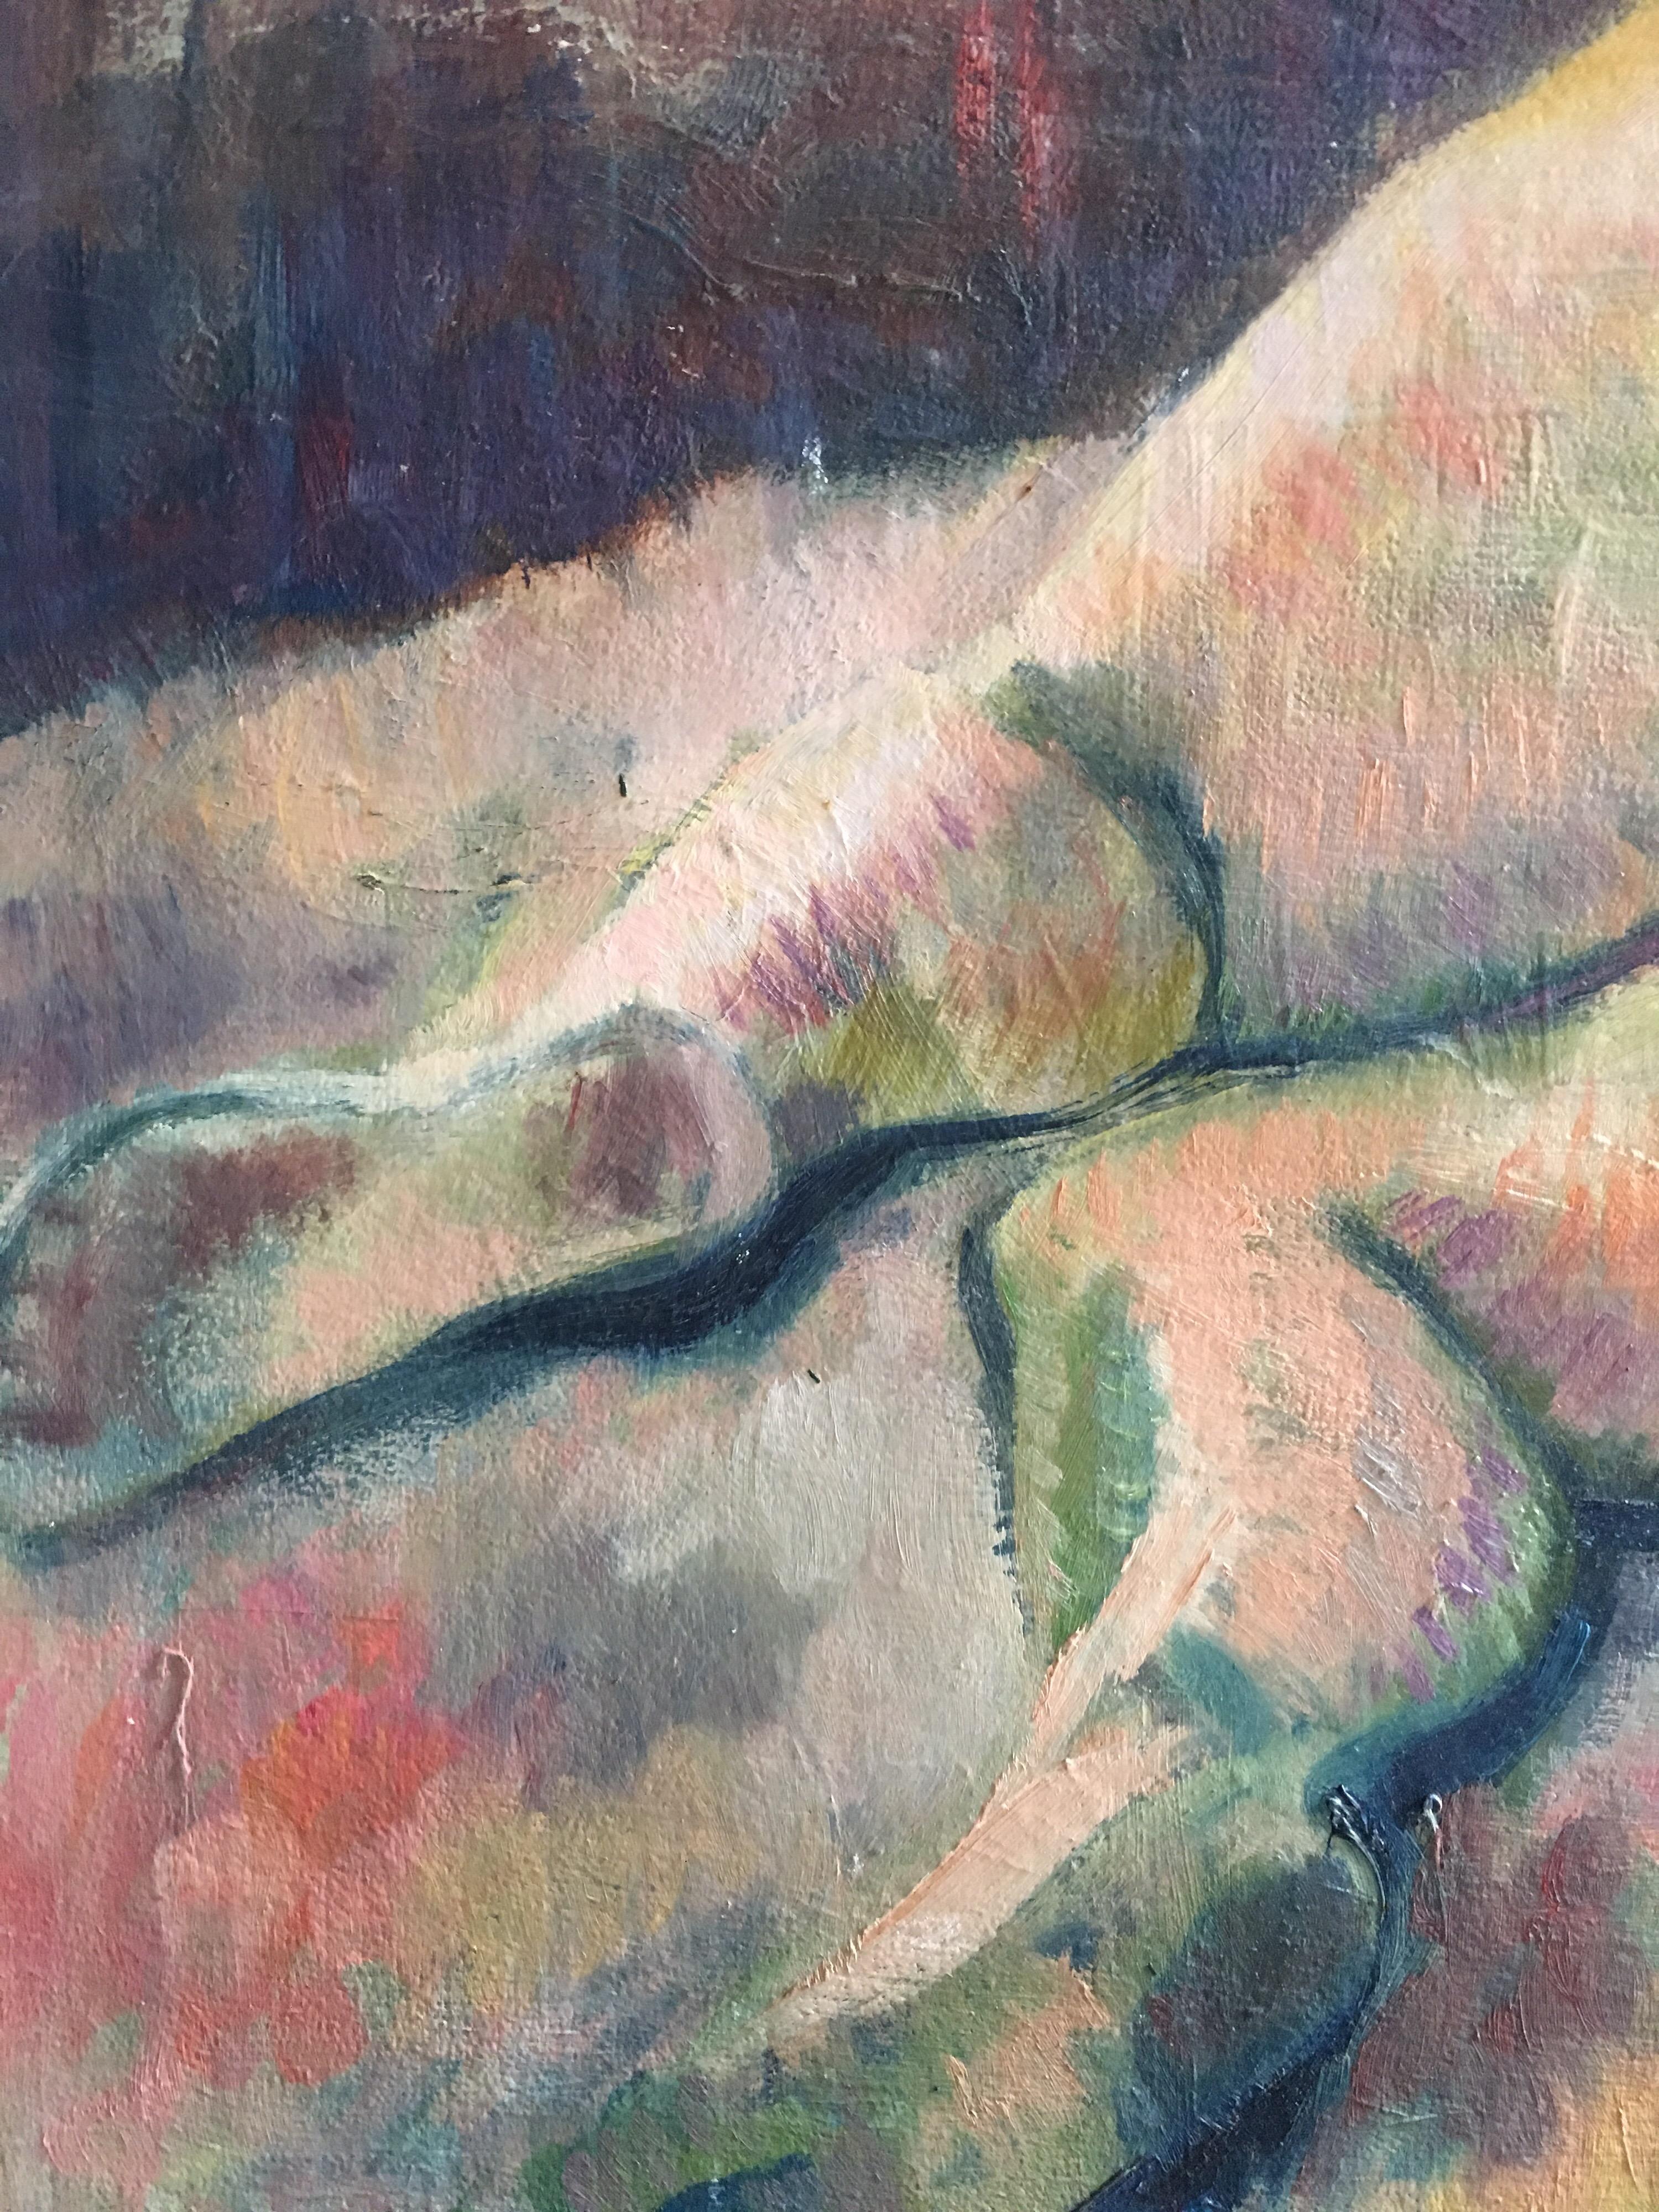 Femme nue, peinture à l'huile abstraite, milieu du 20e siècle, artiste britannique
Par l'artiste britannique Beryl Darton, milieu du 20e siècle.
Peinture à l'huile sur carton, non encadrée
Taille du tableau : 18 x 24 pouces

Fabuleux grand nu